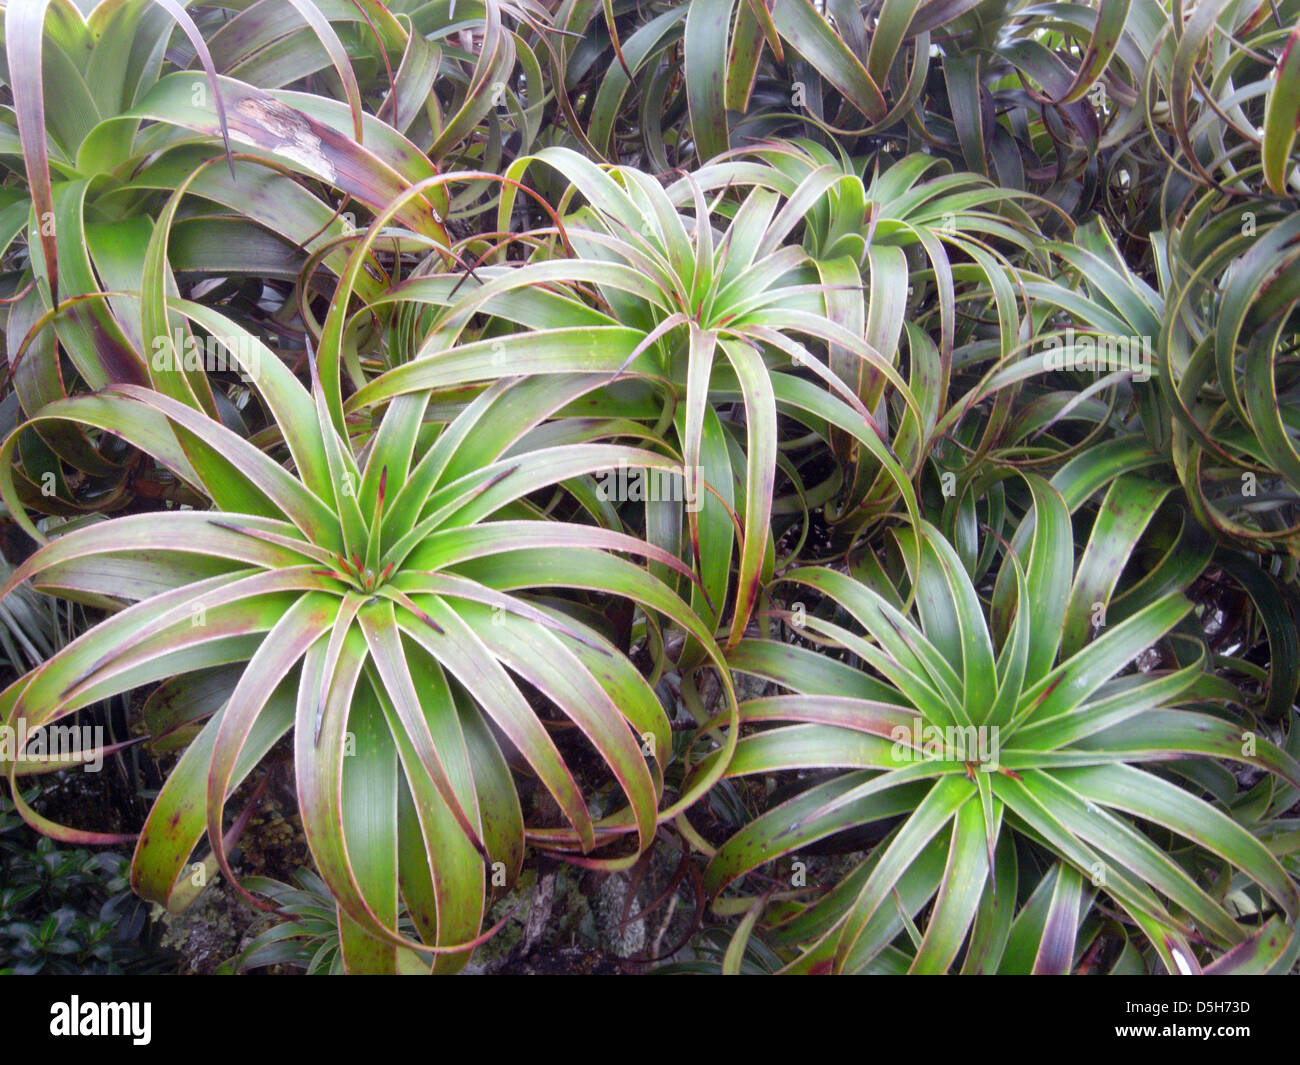 Dracophyllum fitzgeraldii, membre de la famille Pandanus endémiques de l'île Lord Howe, sur le sommet du Mont Gower, Australie Banque D'Images